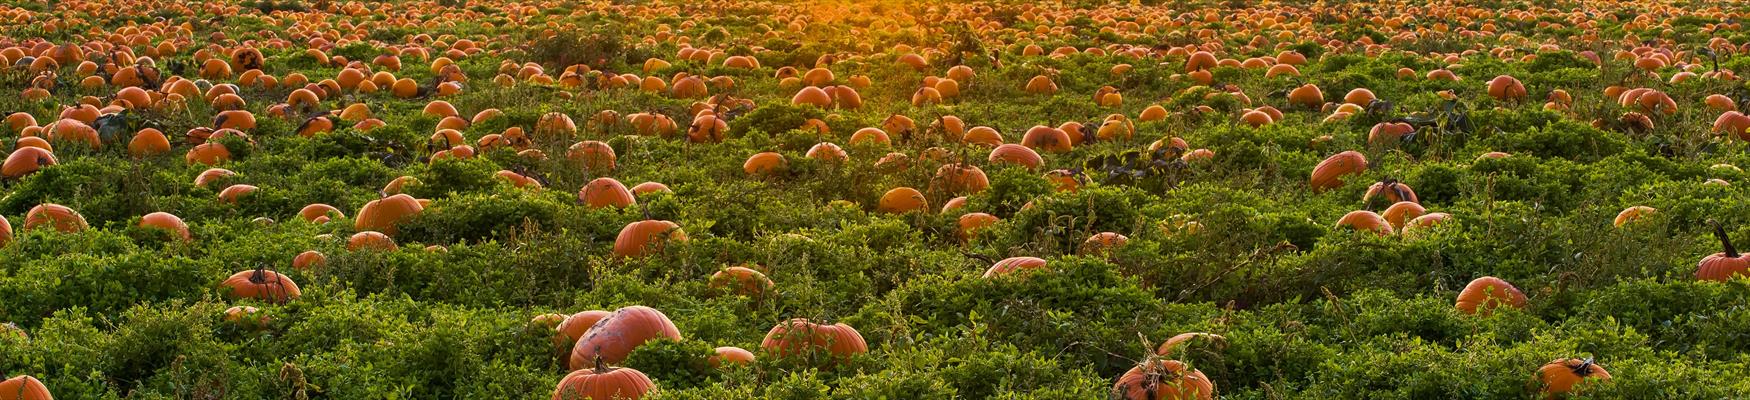 Pumpkins growing in a field